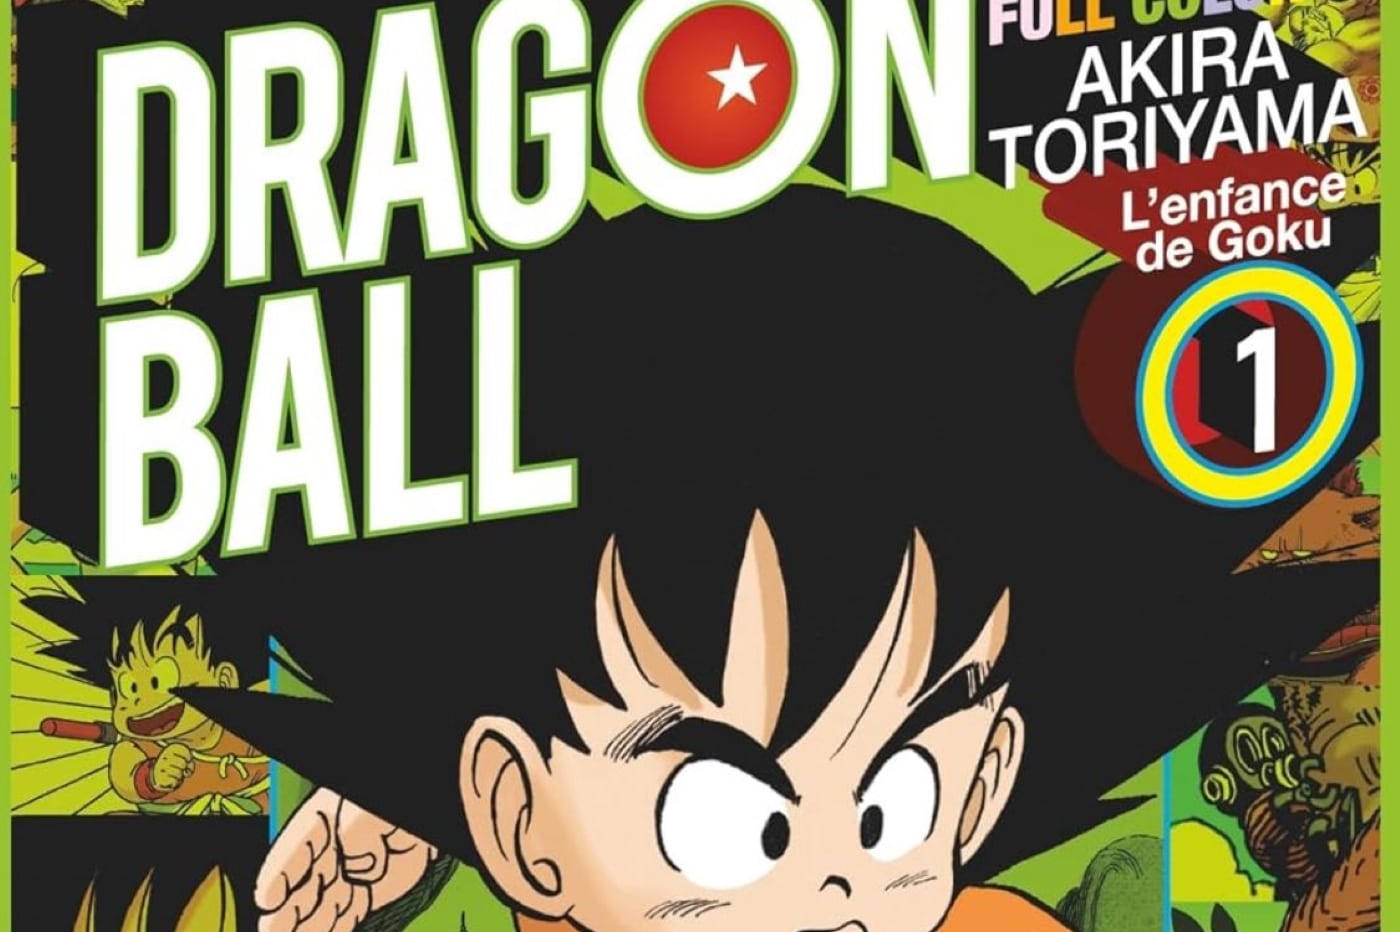 Dragon Ball Full Color, c’est quoi cette nouvelle édition du manga ?